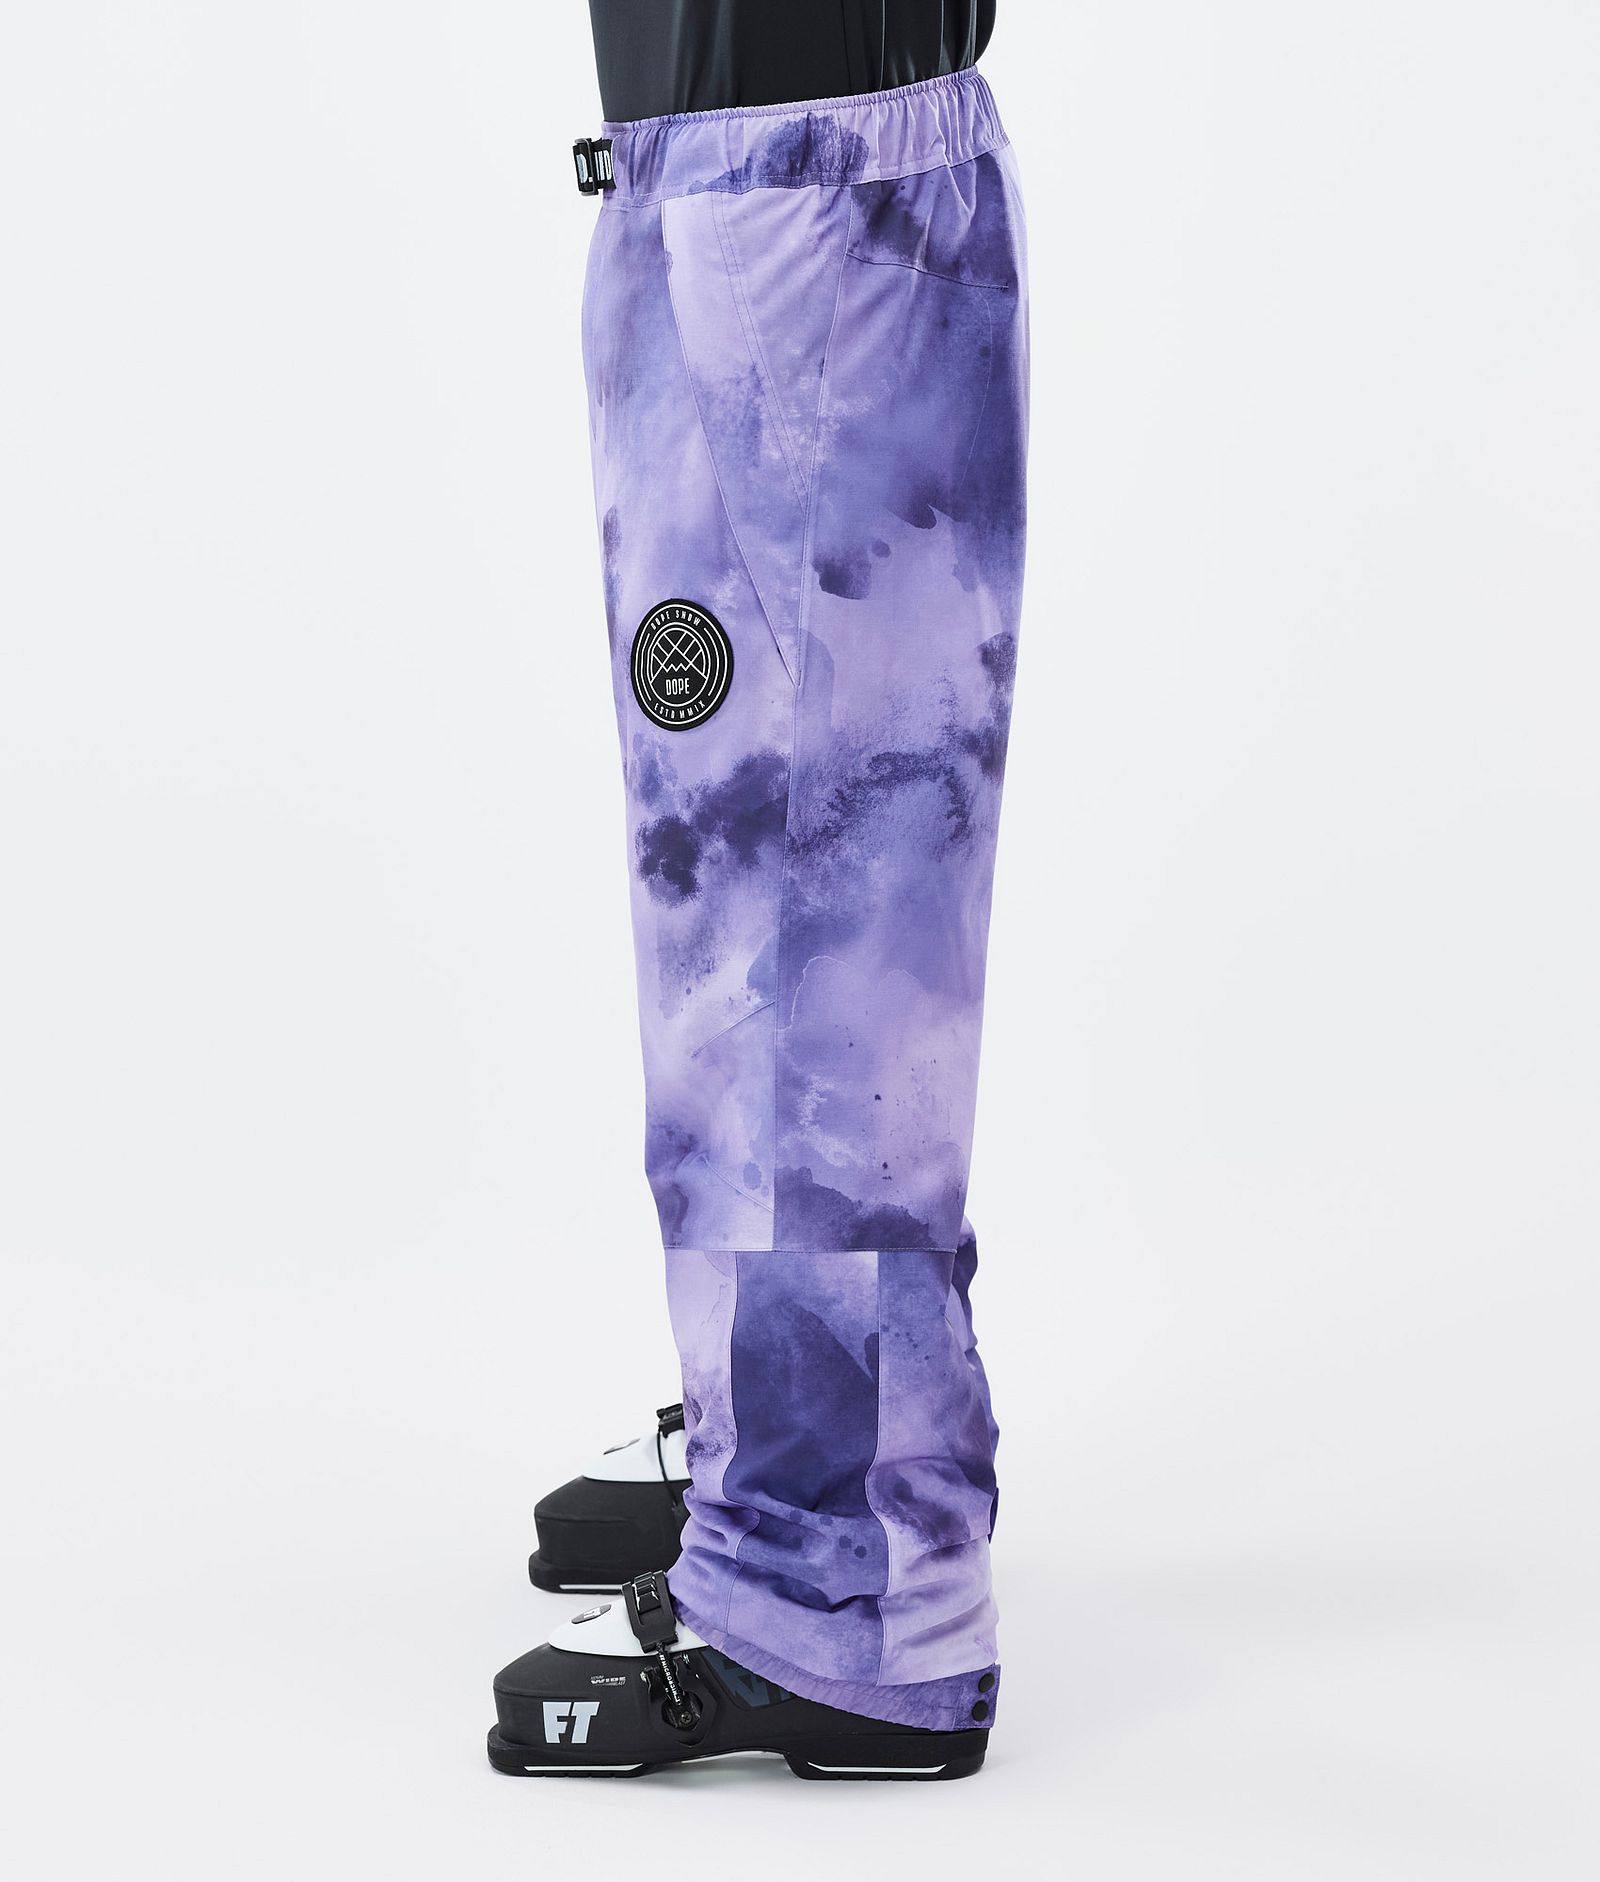 Blizzard Pantalon de Ski Homme Liquid Violet, Image 3 sur 5